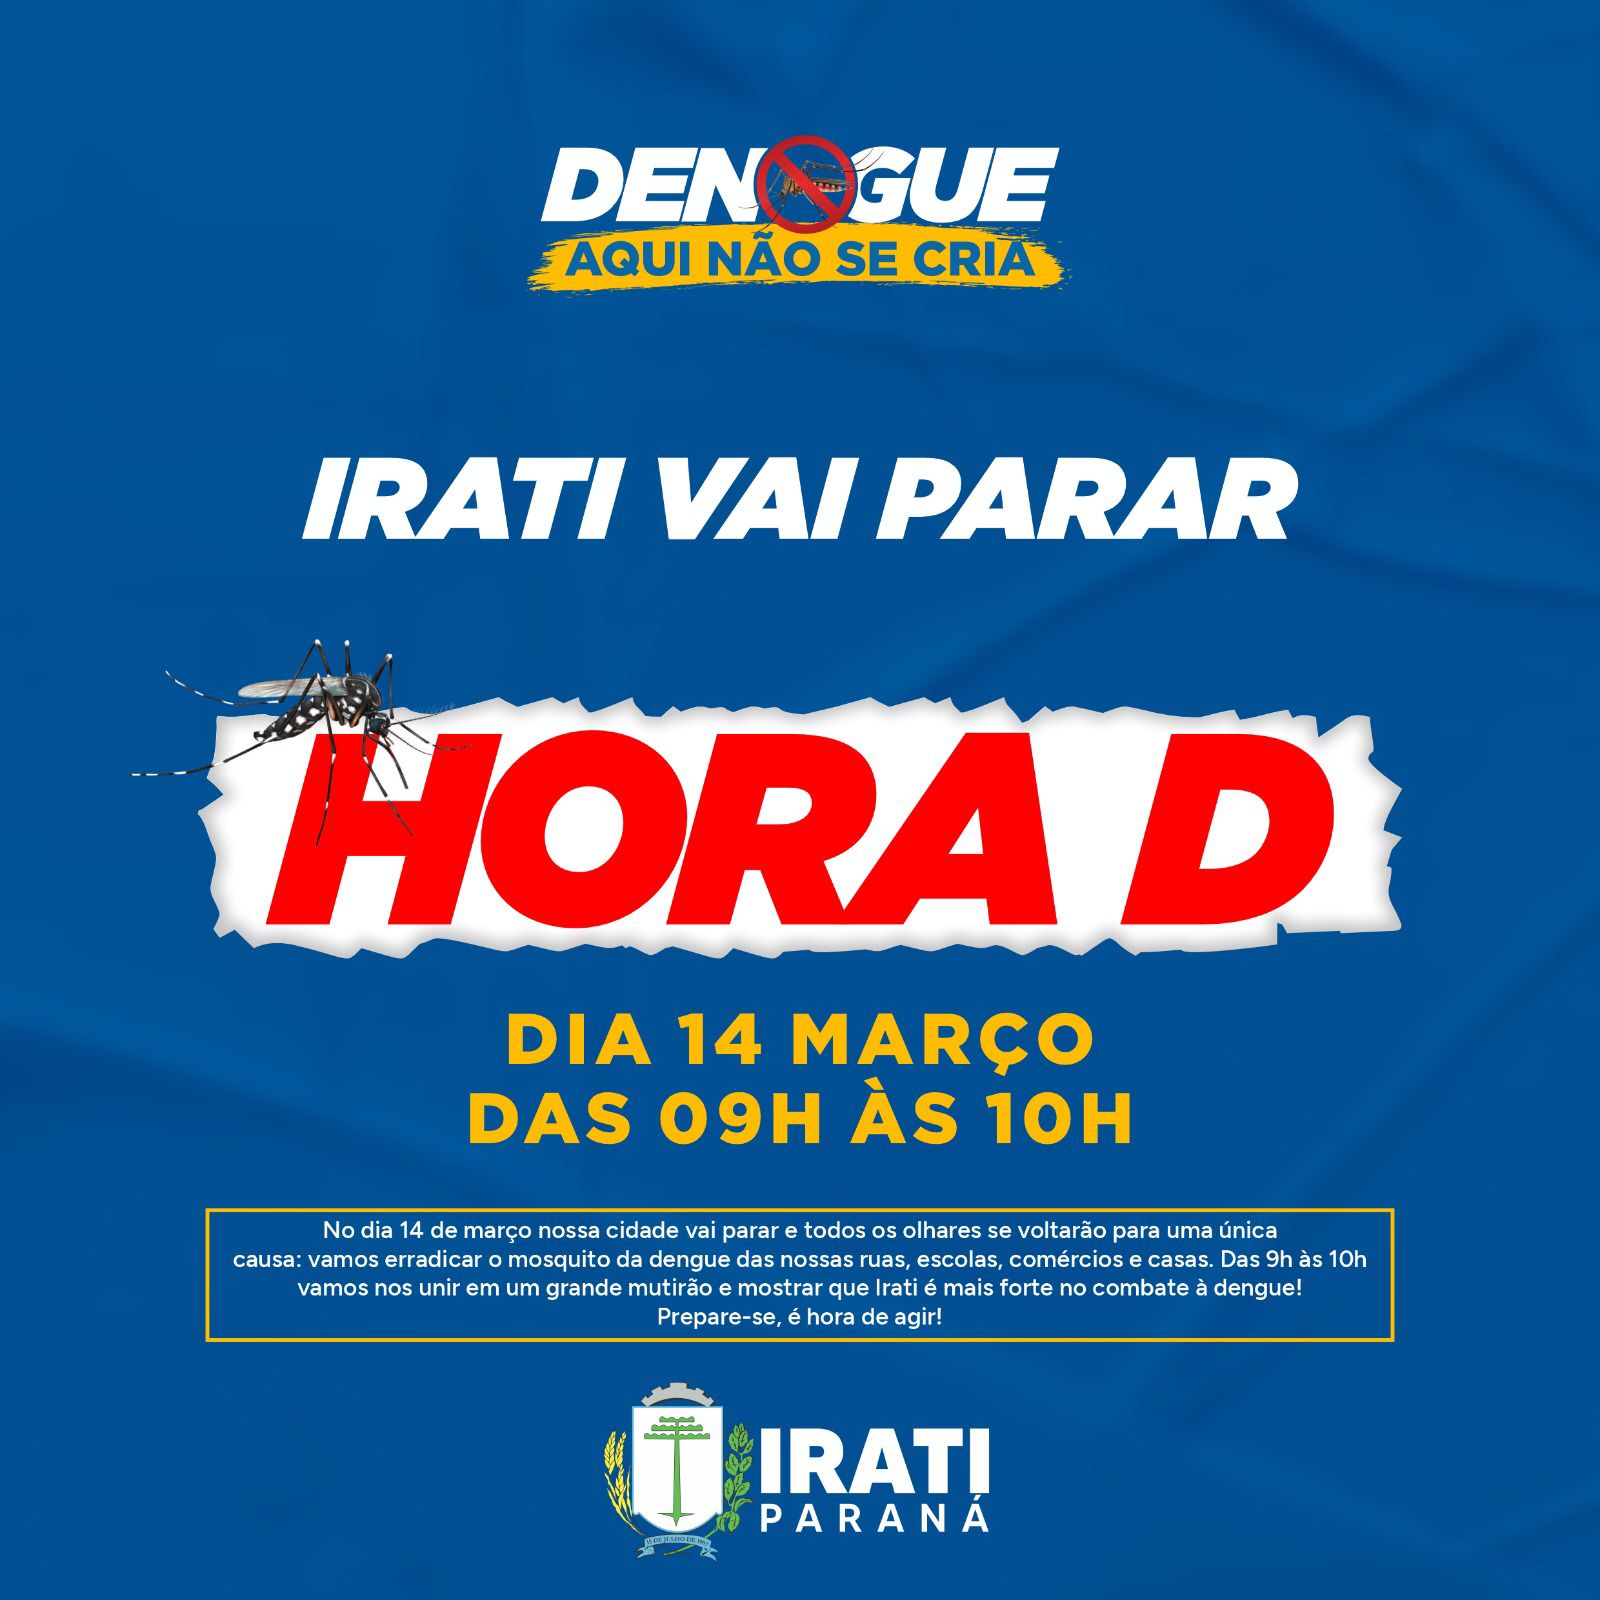 Irati inicia campanha “Dengue aqui não se cria!”